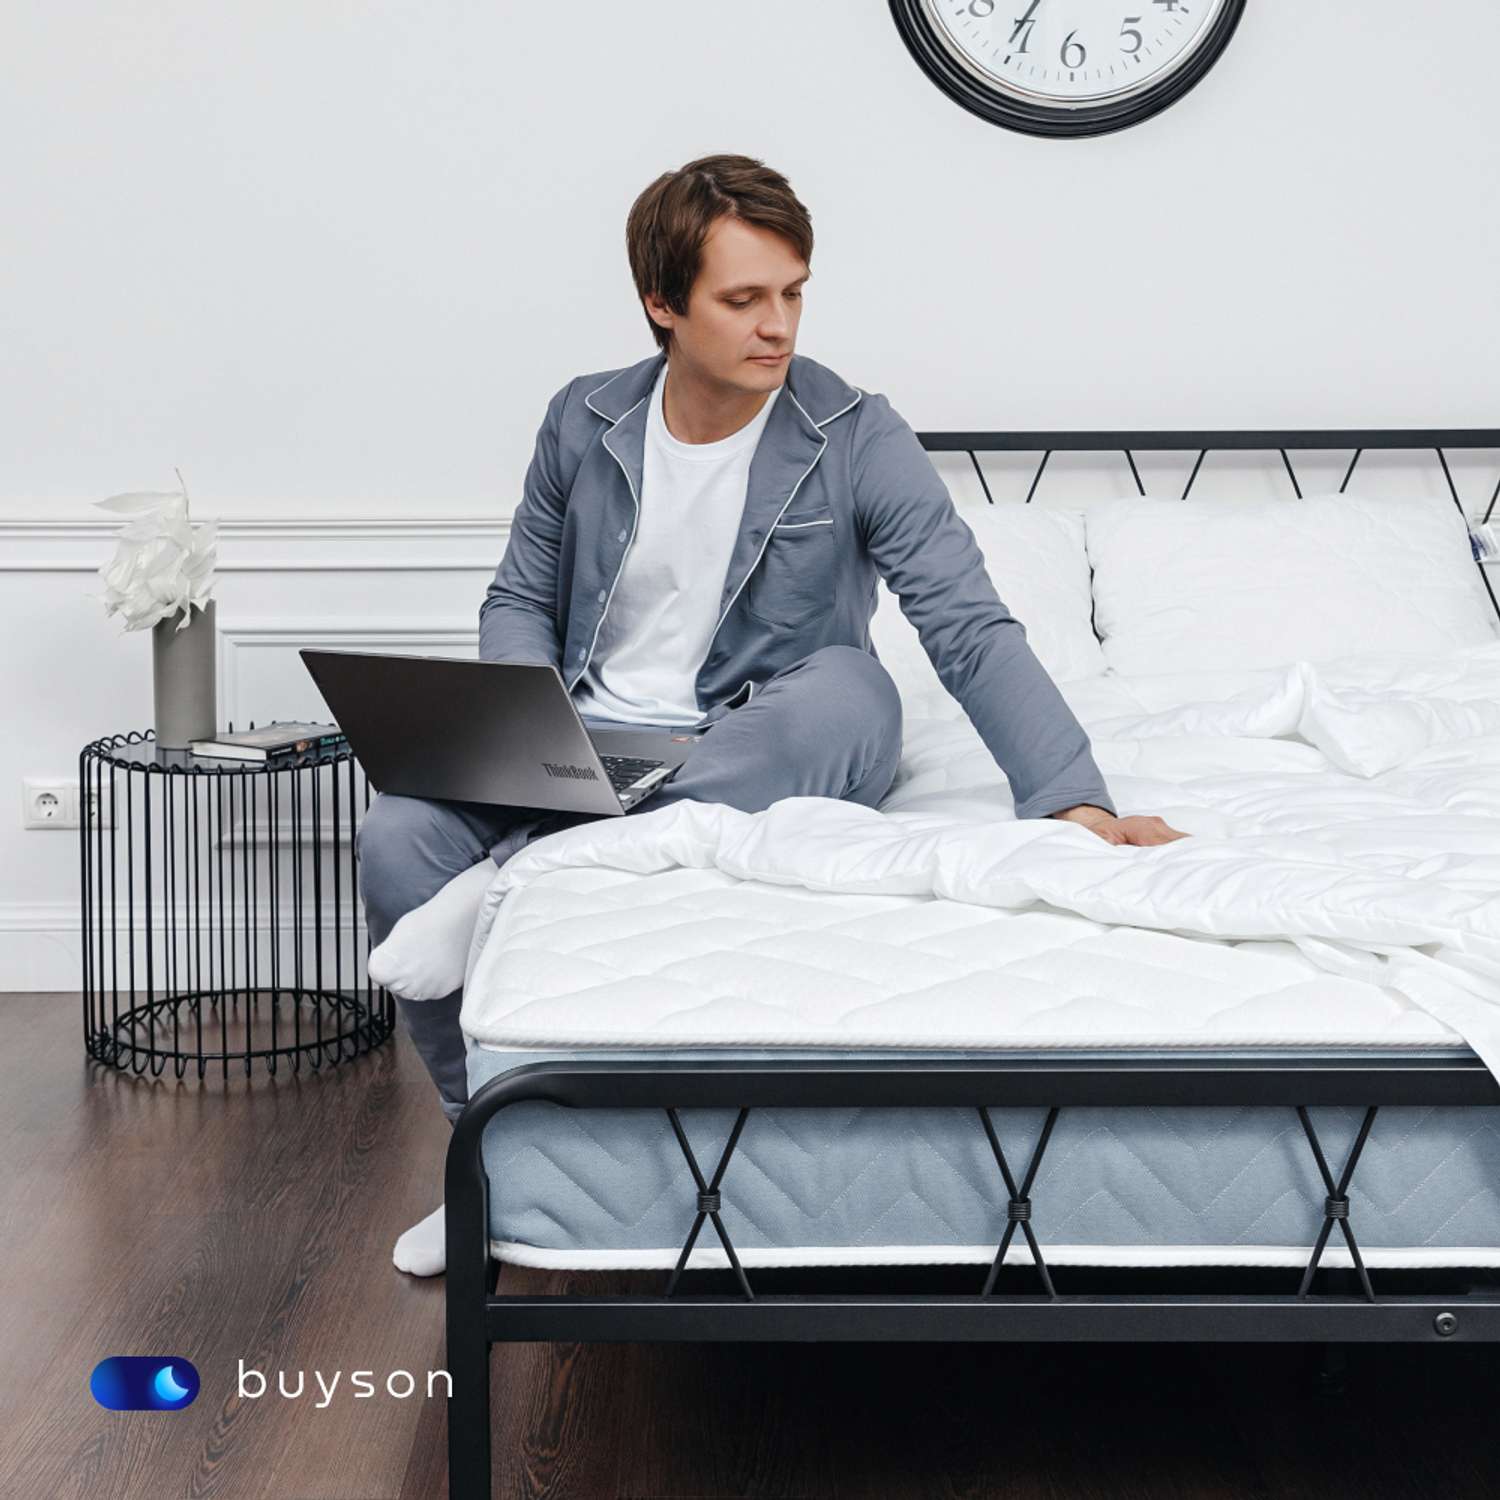 Сет мини buyson BuyRelax Mini: анатомическая подушка 50х70 см и одеяло 140х205 см - фото 7